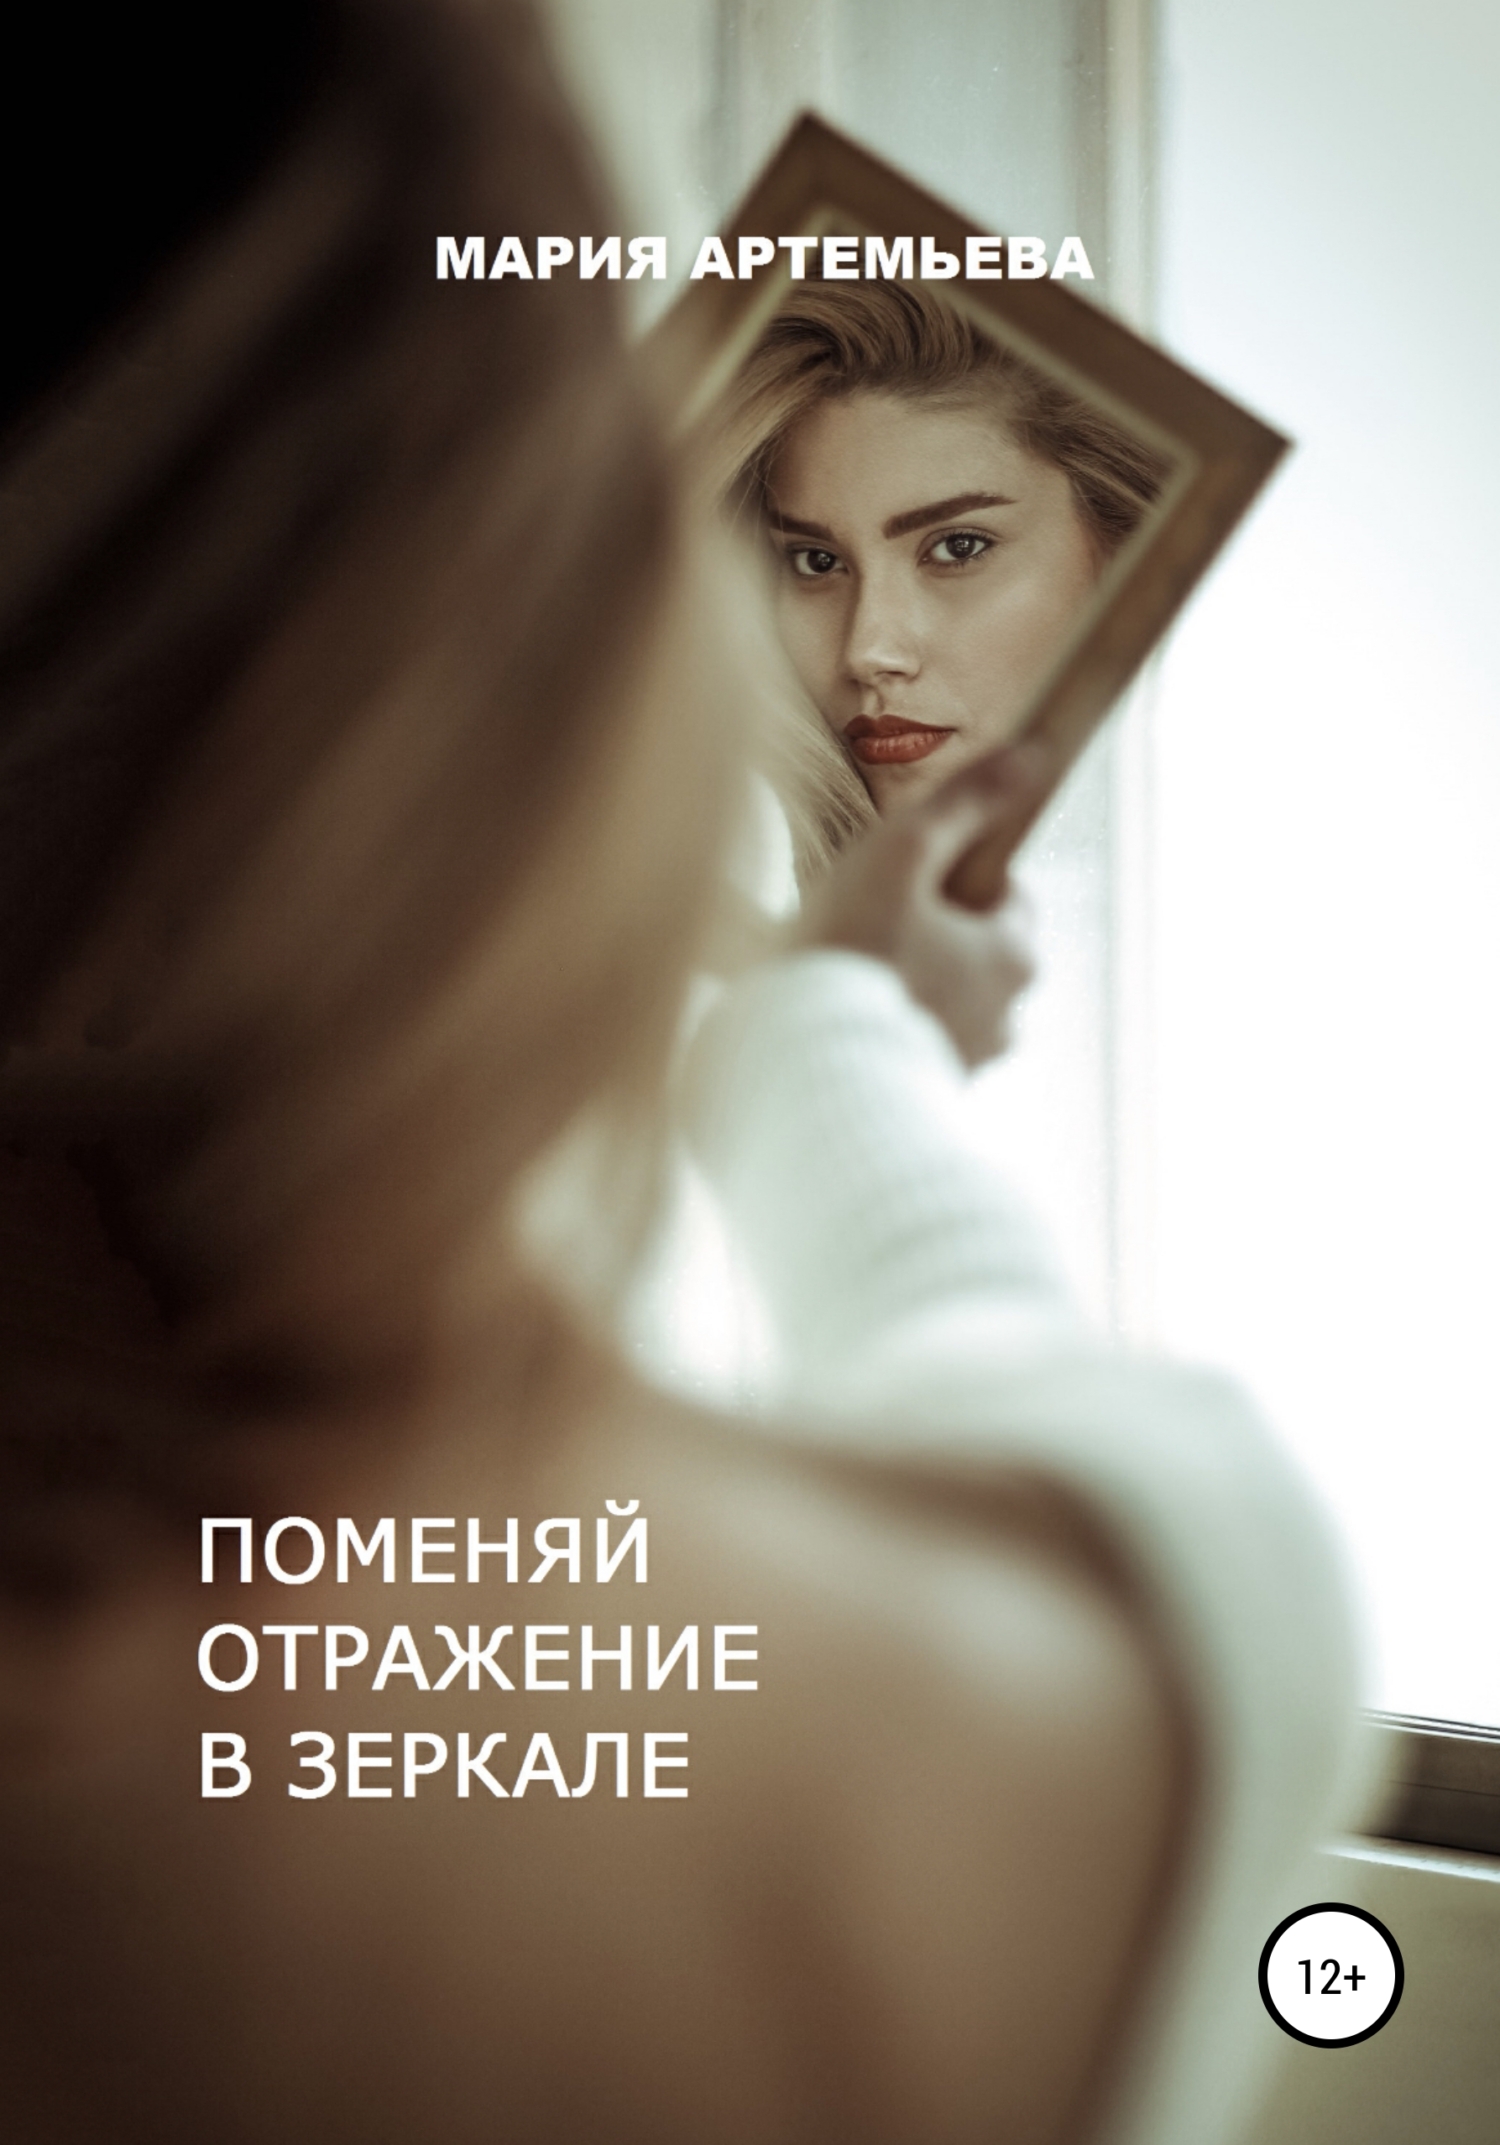 Поменяй отражение в зеркале, Мария Владимировна Артемьева – скачать книгу  fb2, epub, pdf на ЛитРес